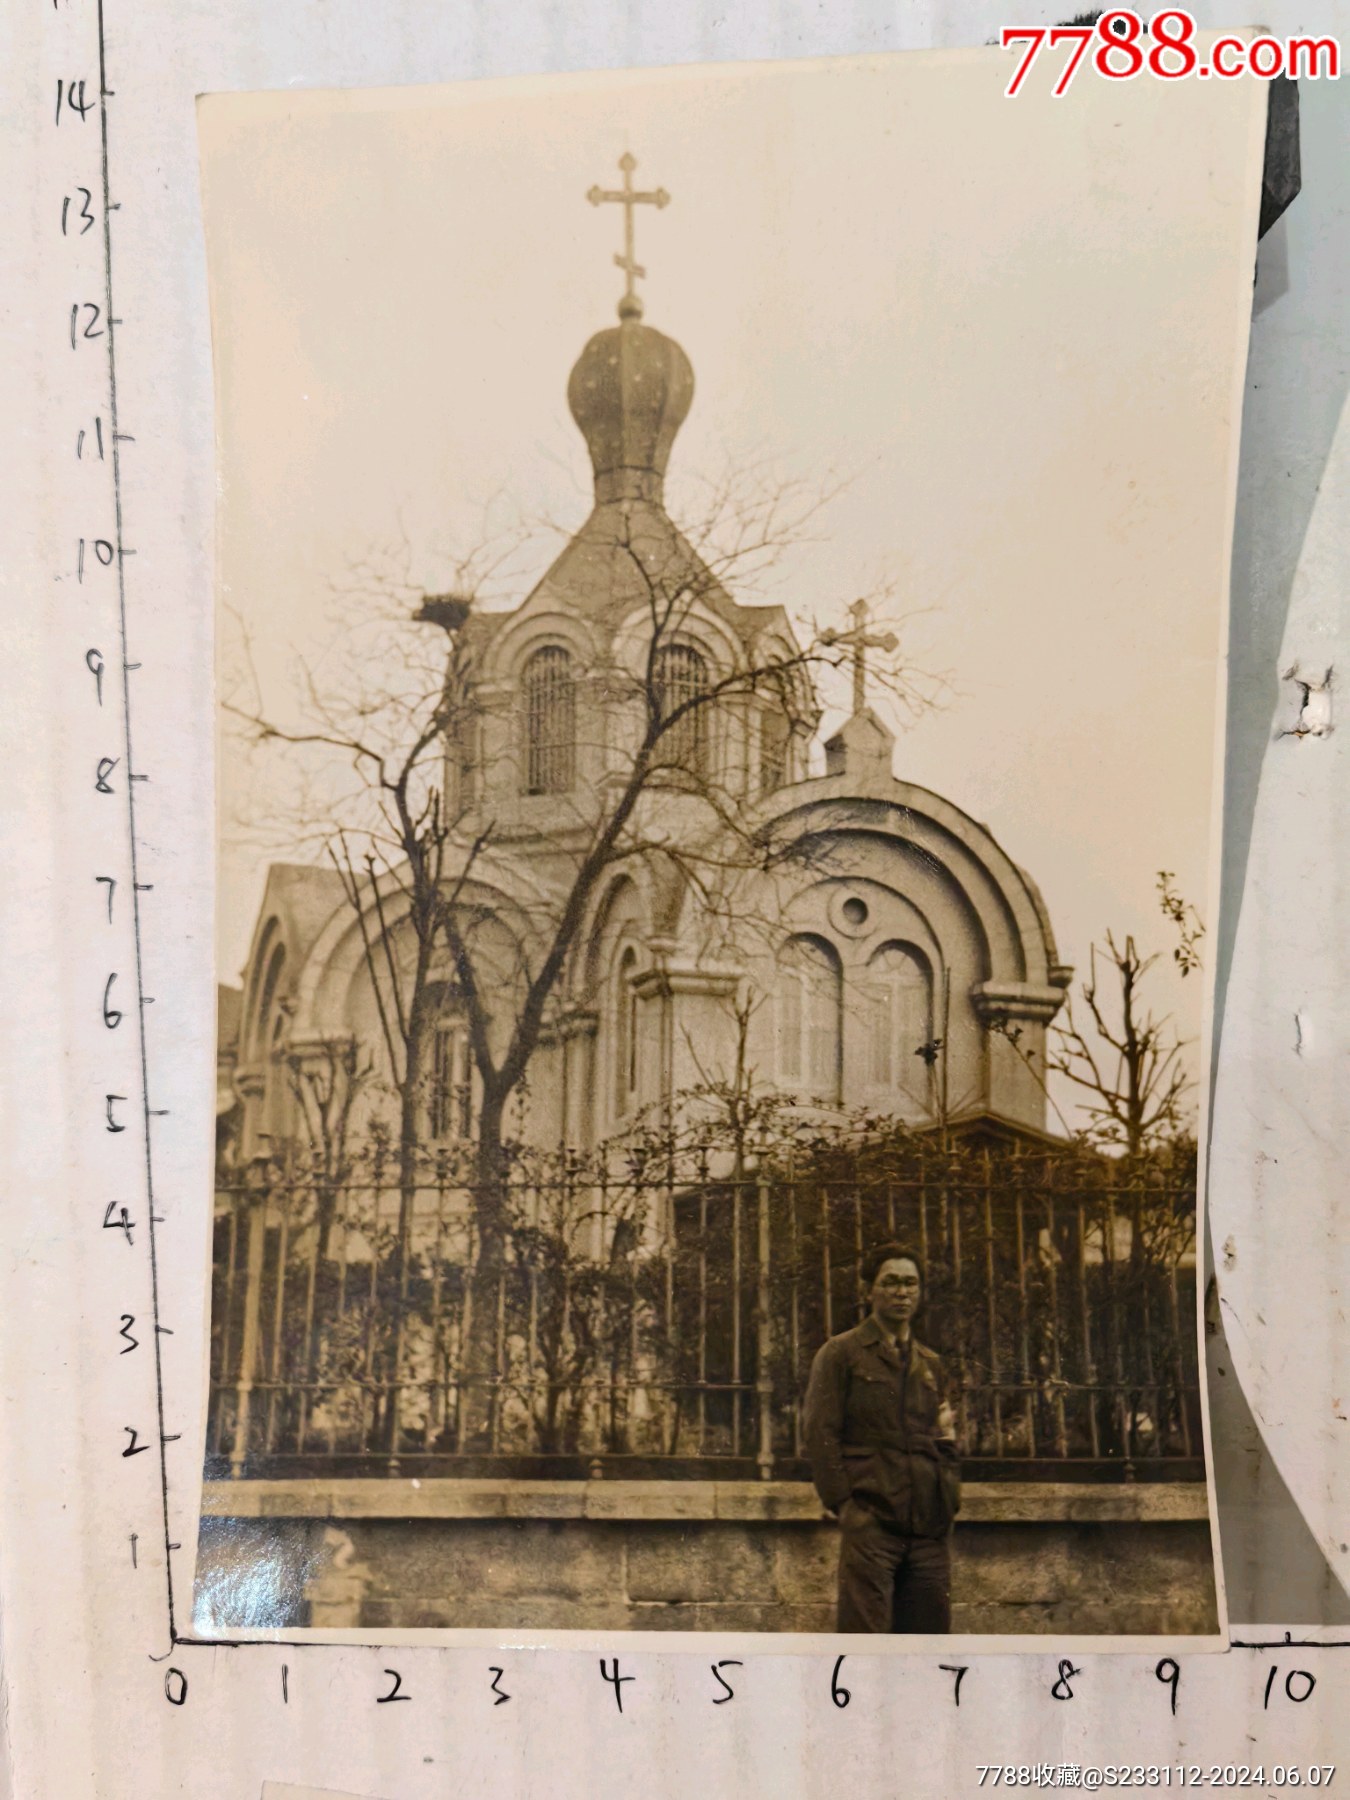 时期满洲时期朝日新闻社人员在中国相册湖北武汉汉口东正教堂老照片